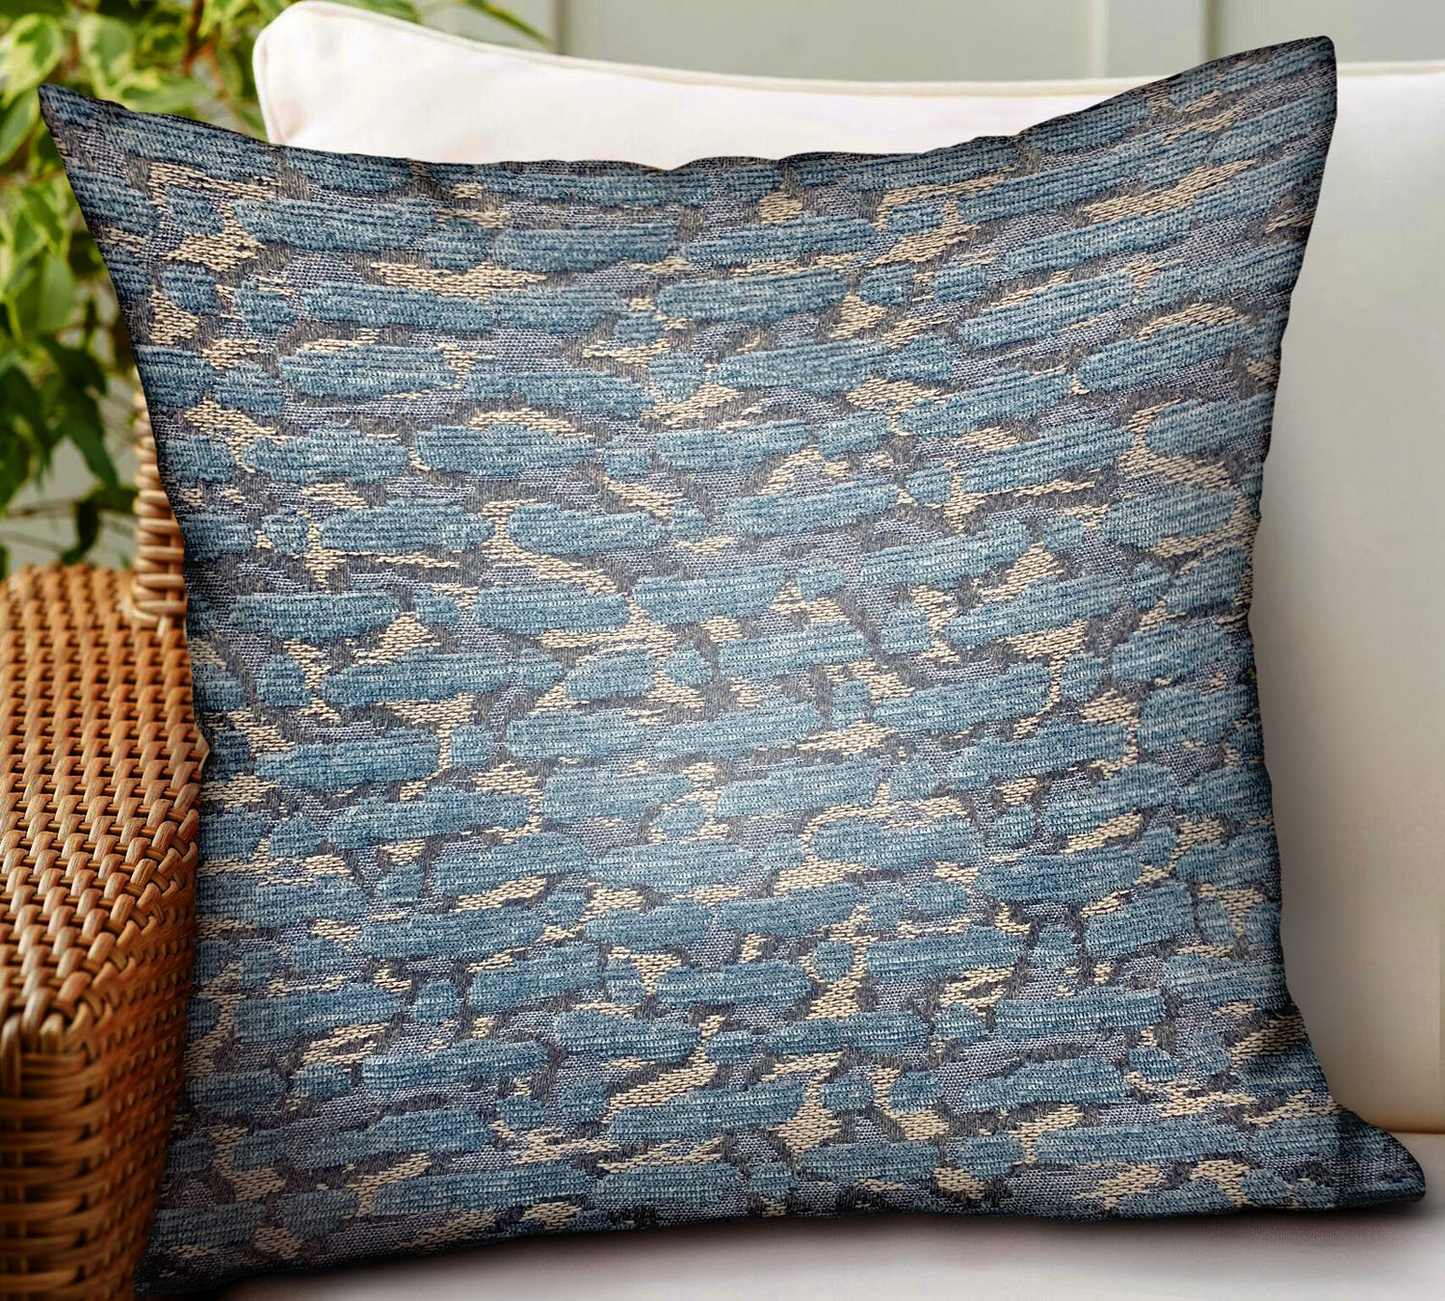 Indigo Rivulet Blue Solid Luxury Outdoor/Indoor Throw Pillow